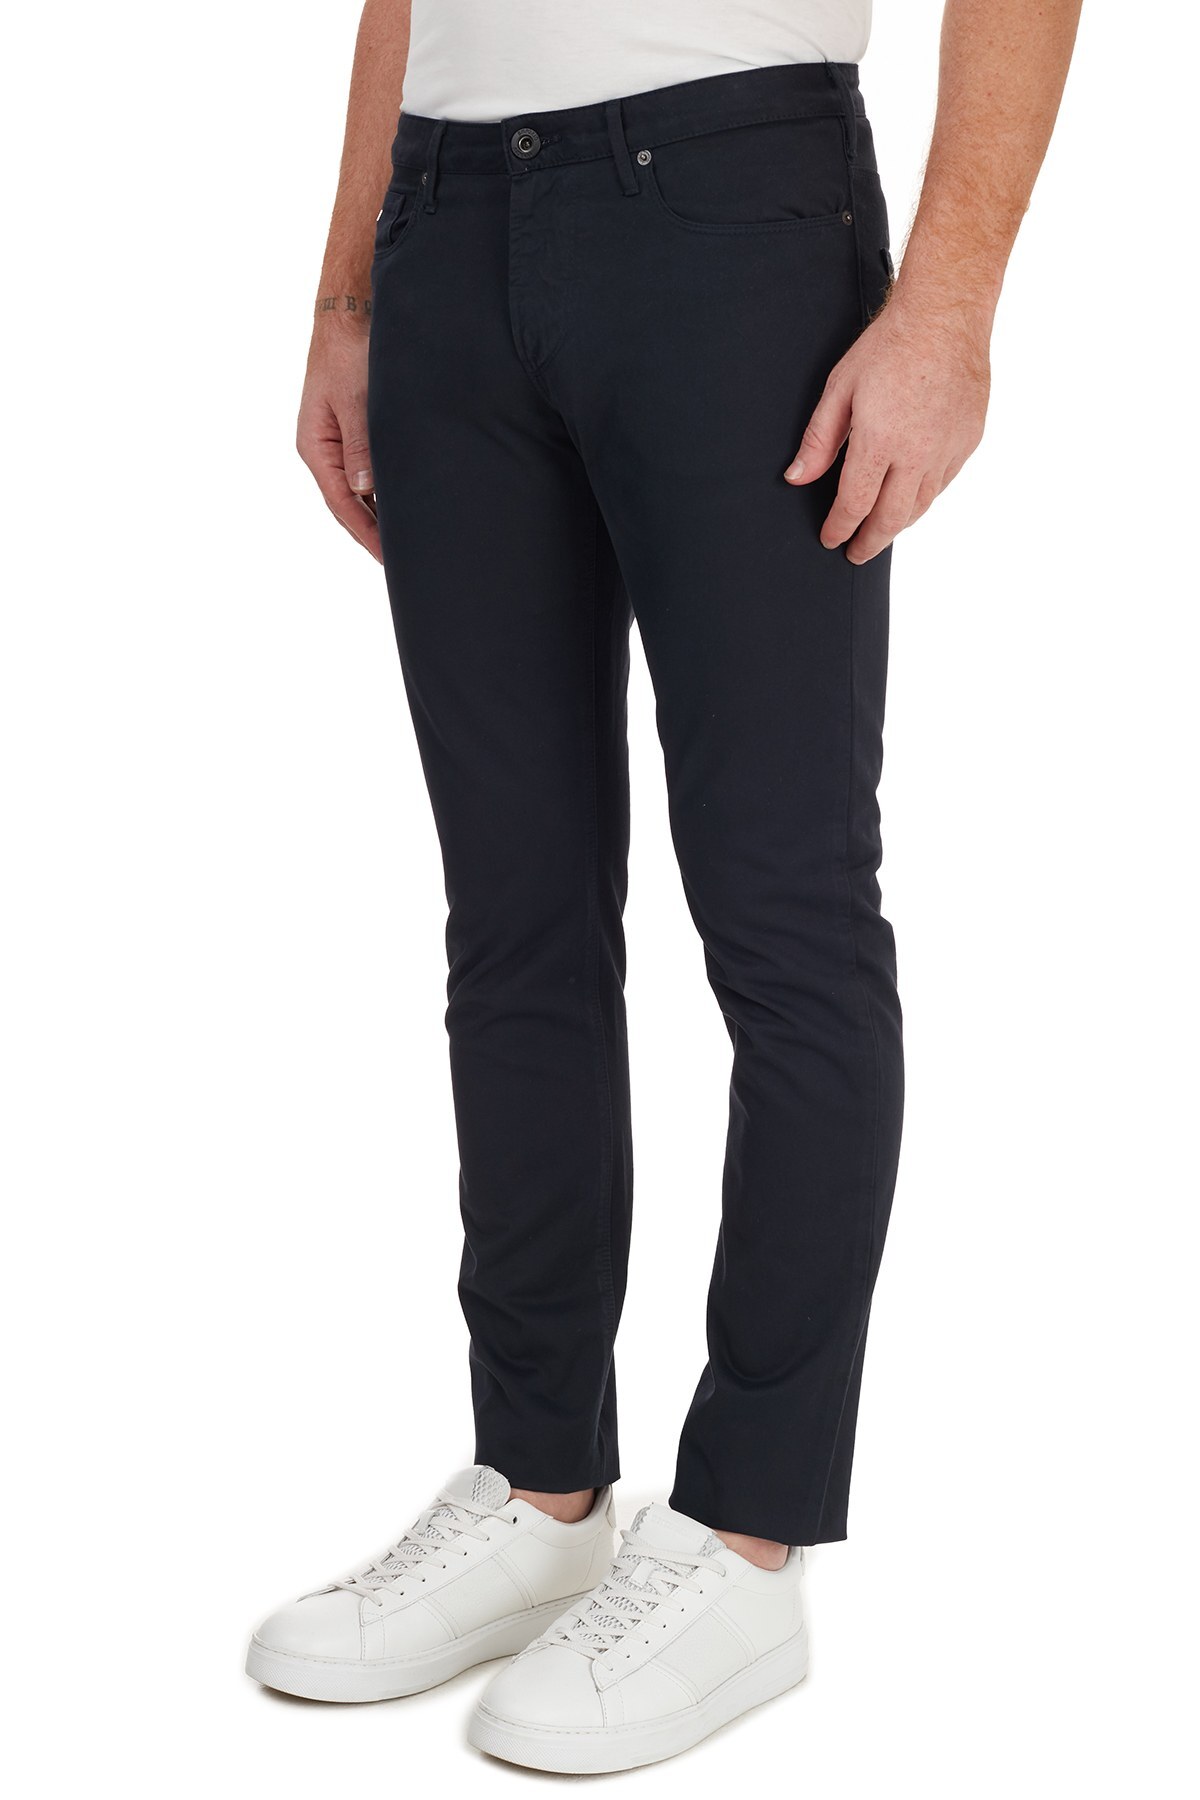 Emporio Armani % 100 Pamuklu Slim Fit J06 Jeans Erkek Kot Pantolon 6H1J06 1NF9Z 0920 LACİVERT